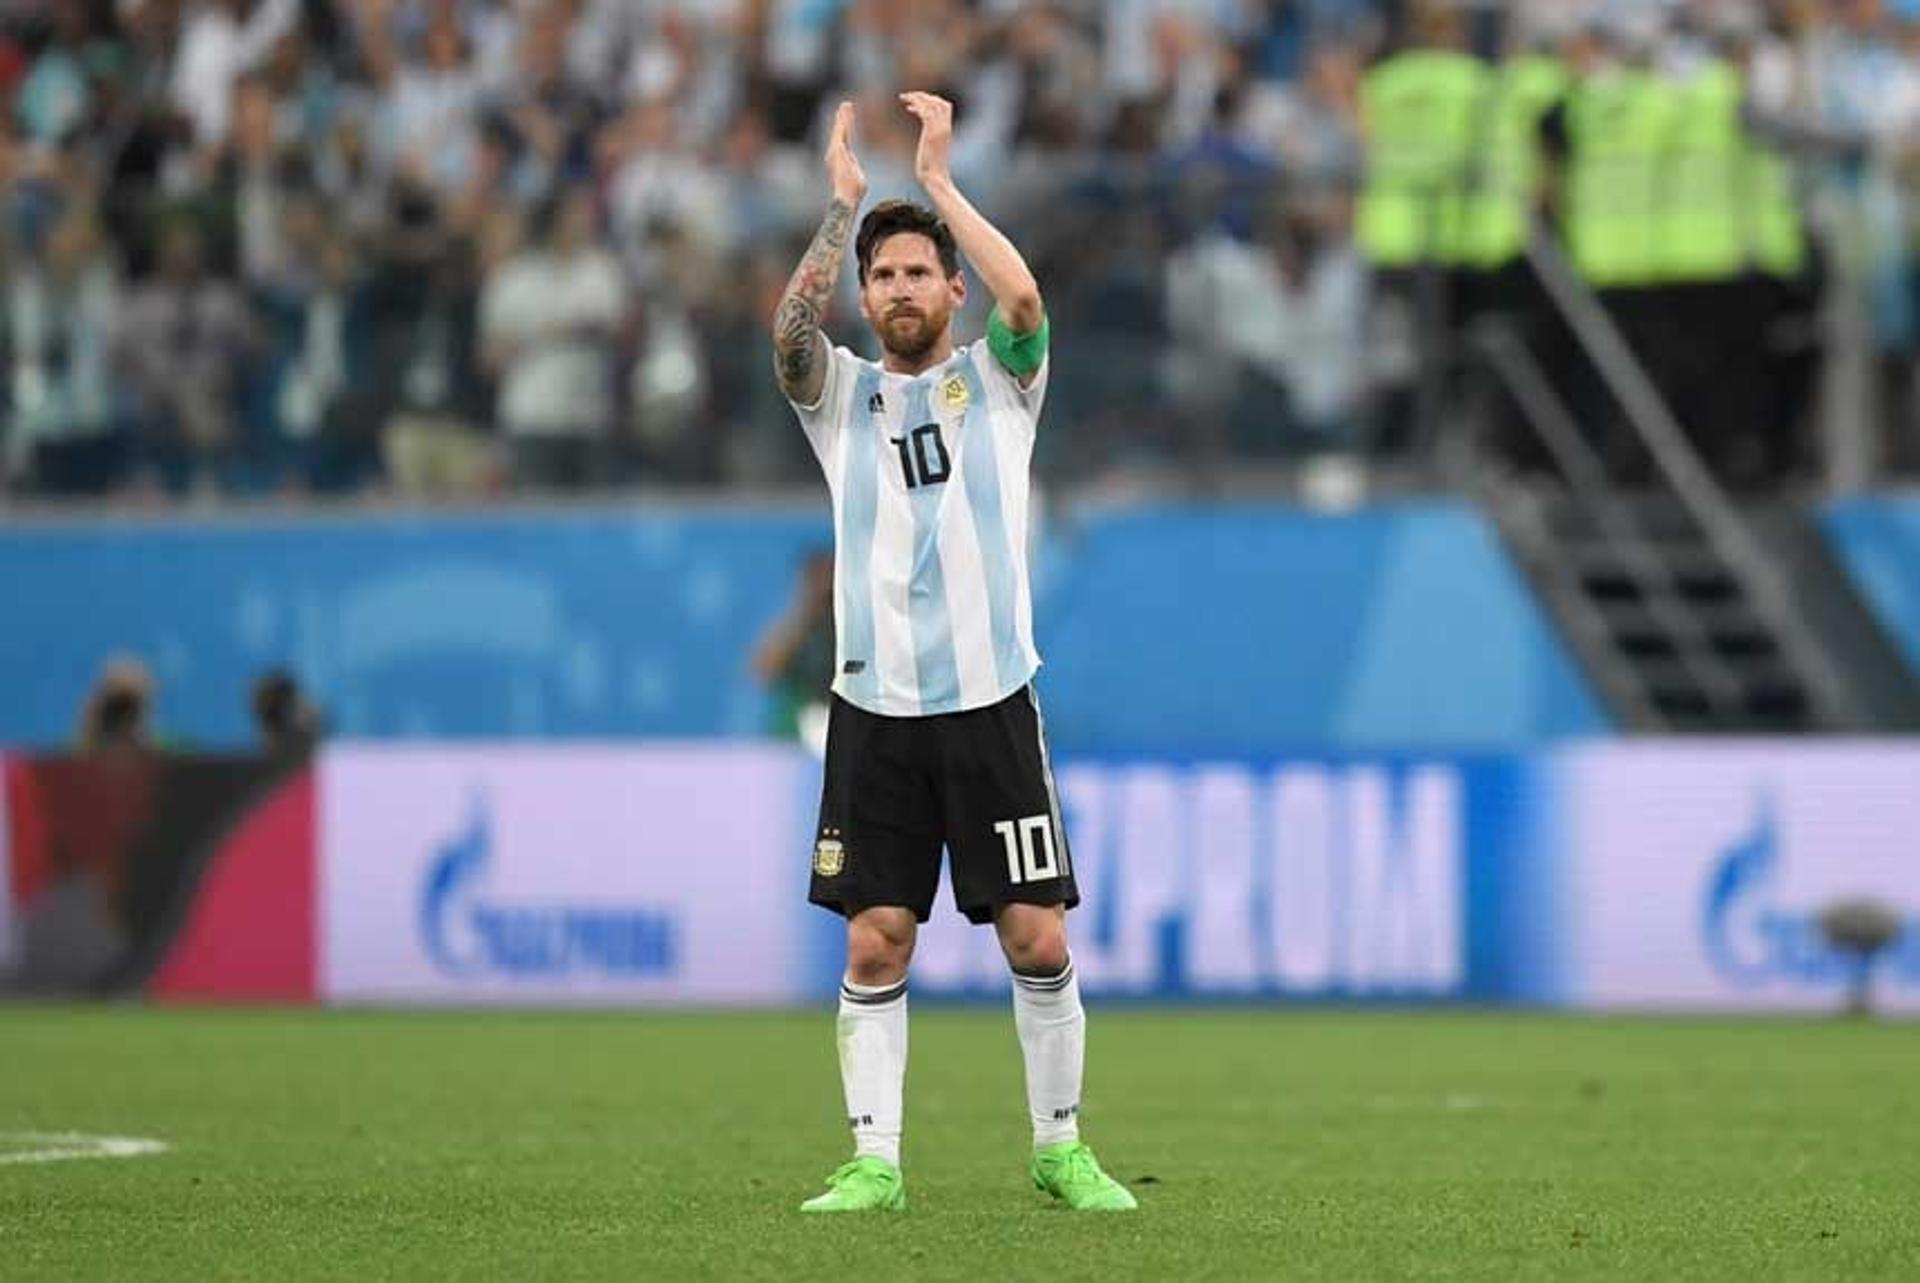 Aplausos para Messi, que marcou seu primeiro gol nesta Copa, abrindo caminho para o triunfo contra a Nigéria